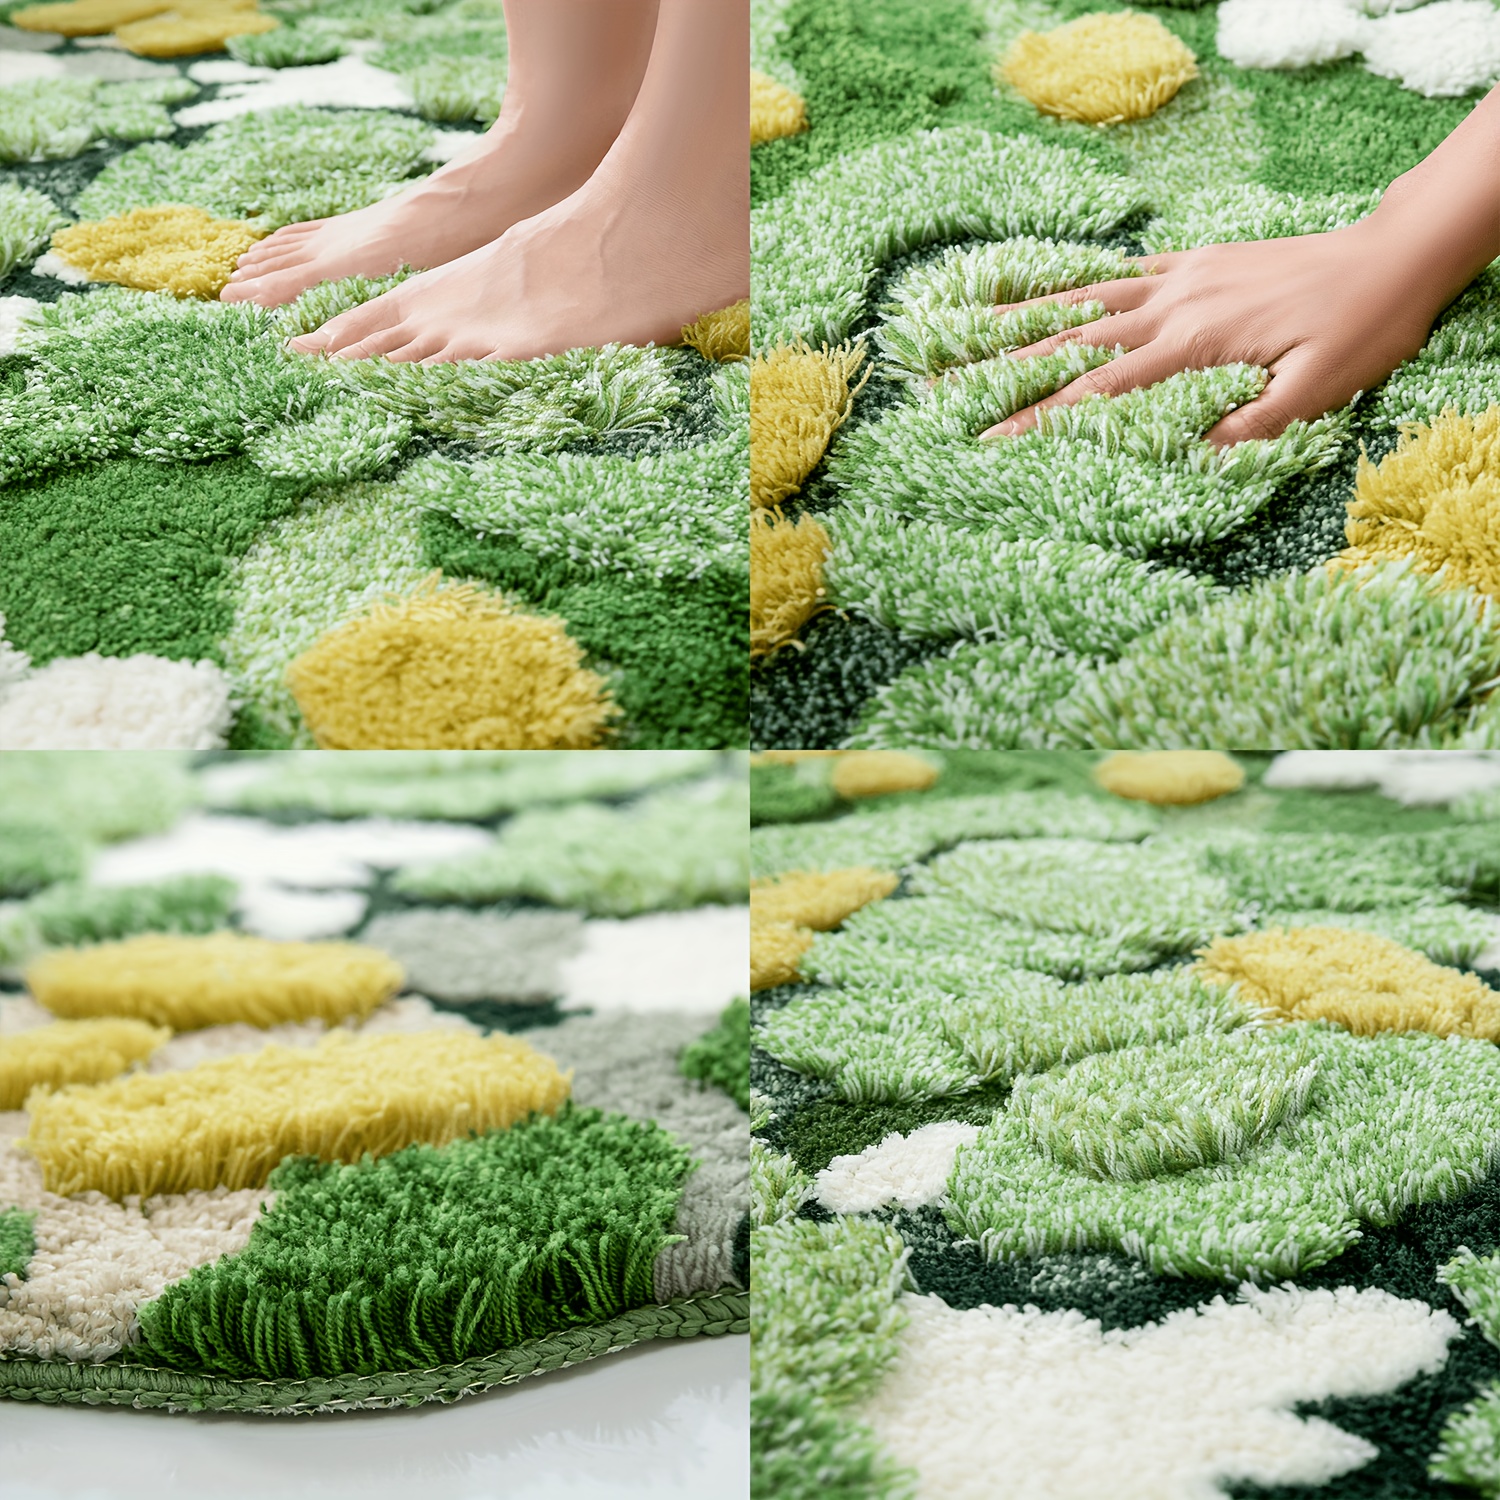 InyaHome suave Shag musgo flor Linda alfombra para baño innovador lago  musgo decoración alfombras antideslizante lavable baño ducha bañera